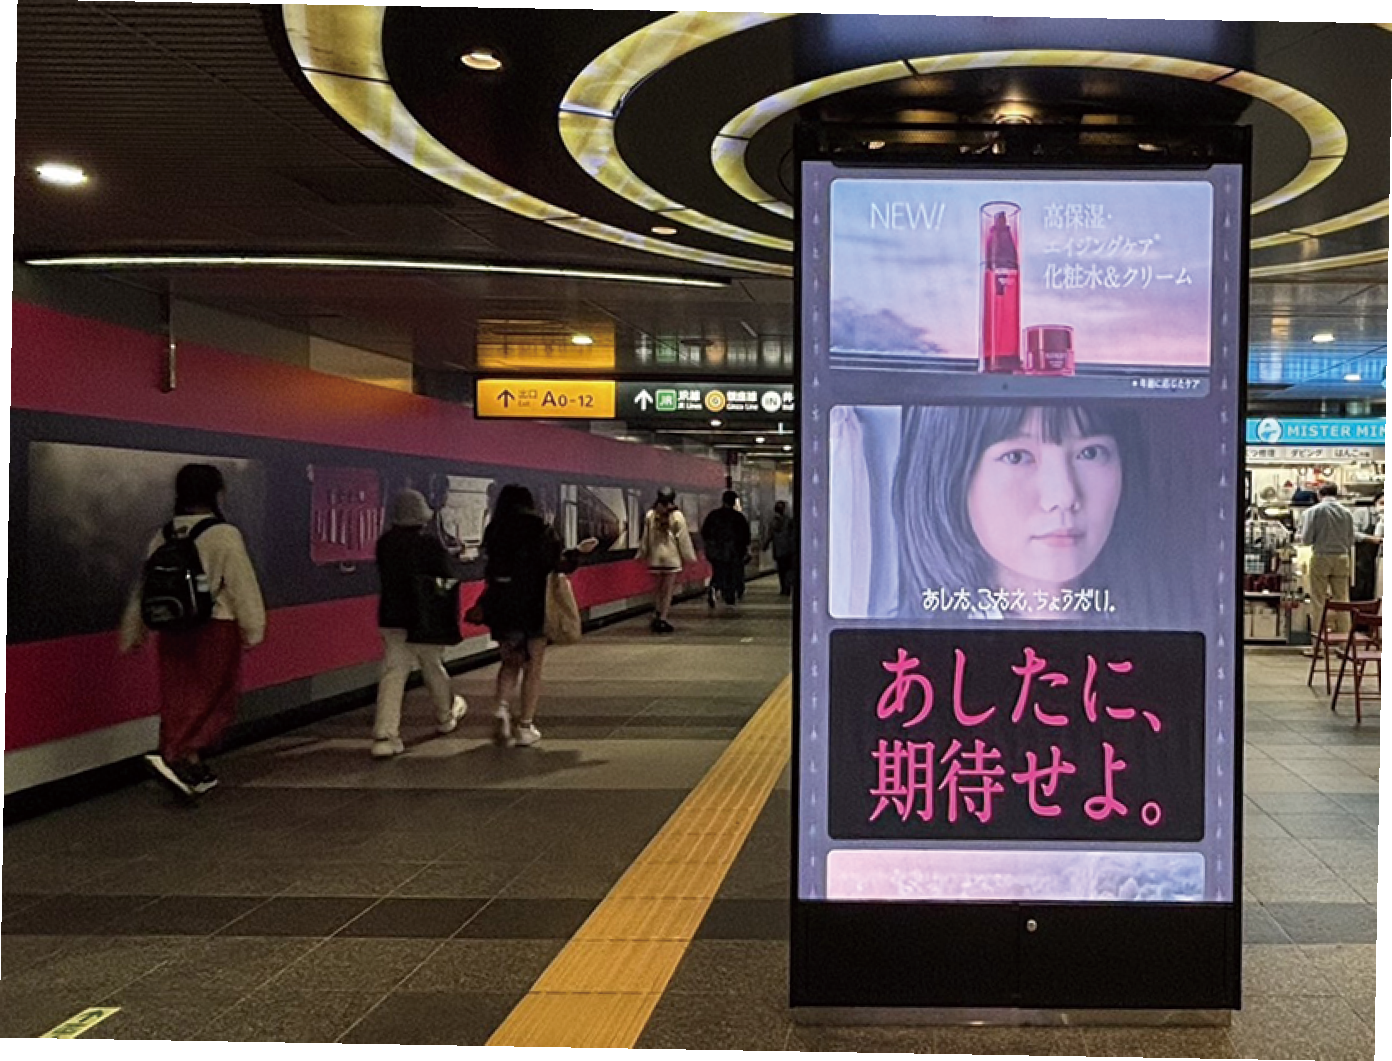 渋谷駅地下通路に掲出された縦型サイネージ